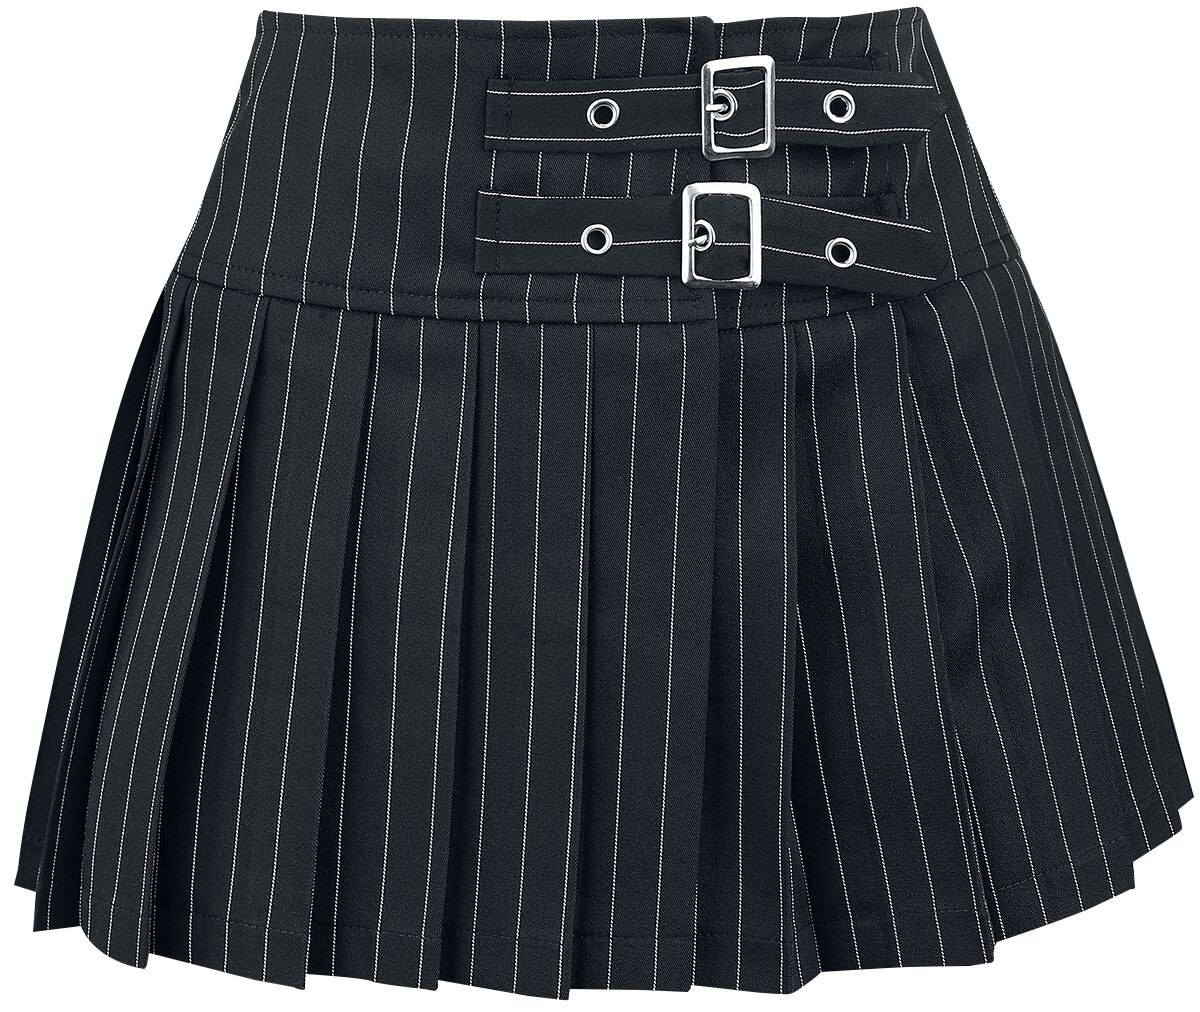 Banned Alternative - Gothic Kurzer Rock - Sisterhood Skirt - XS bis XL - für Damen - Größe M - schwarz/weiß